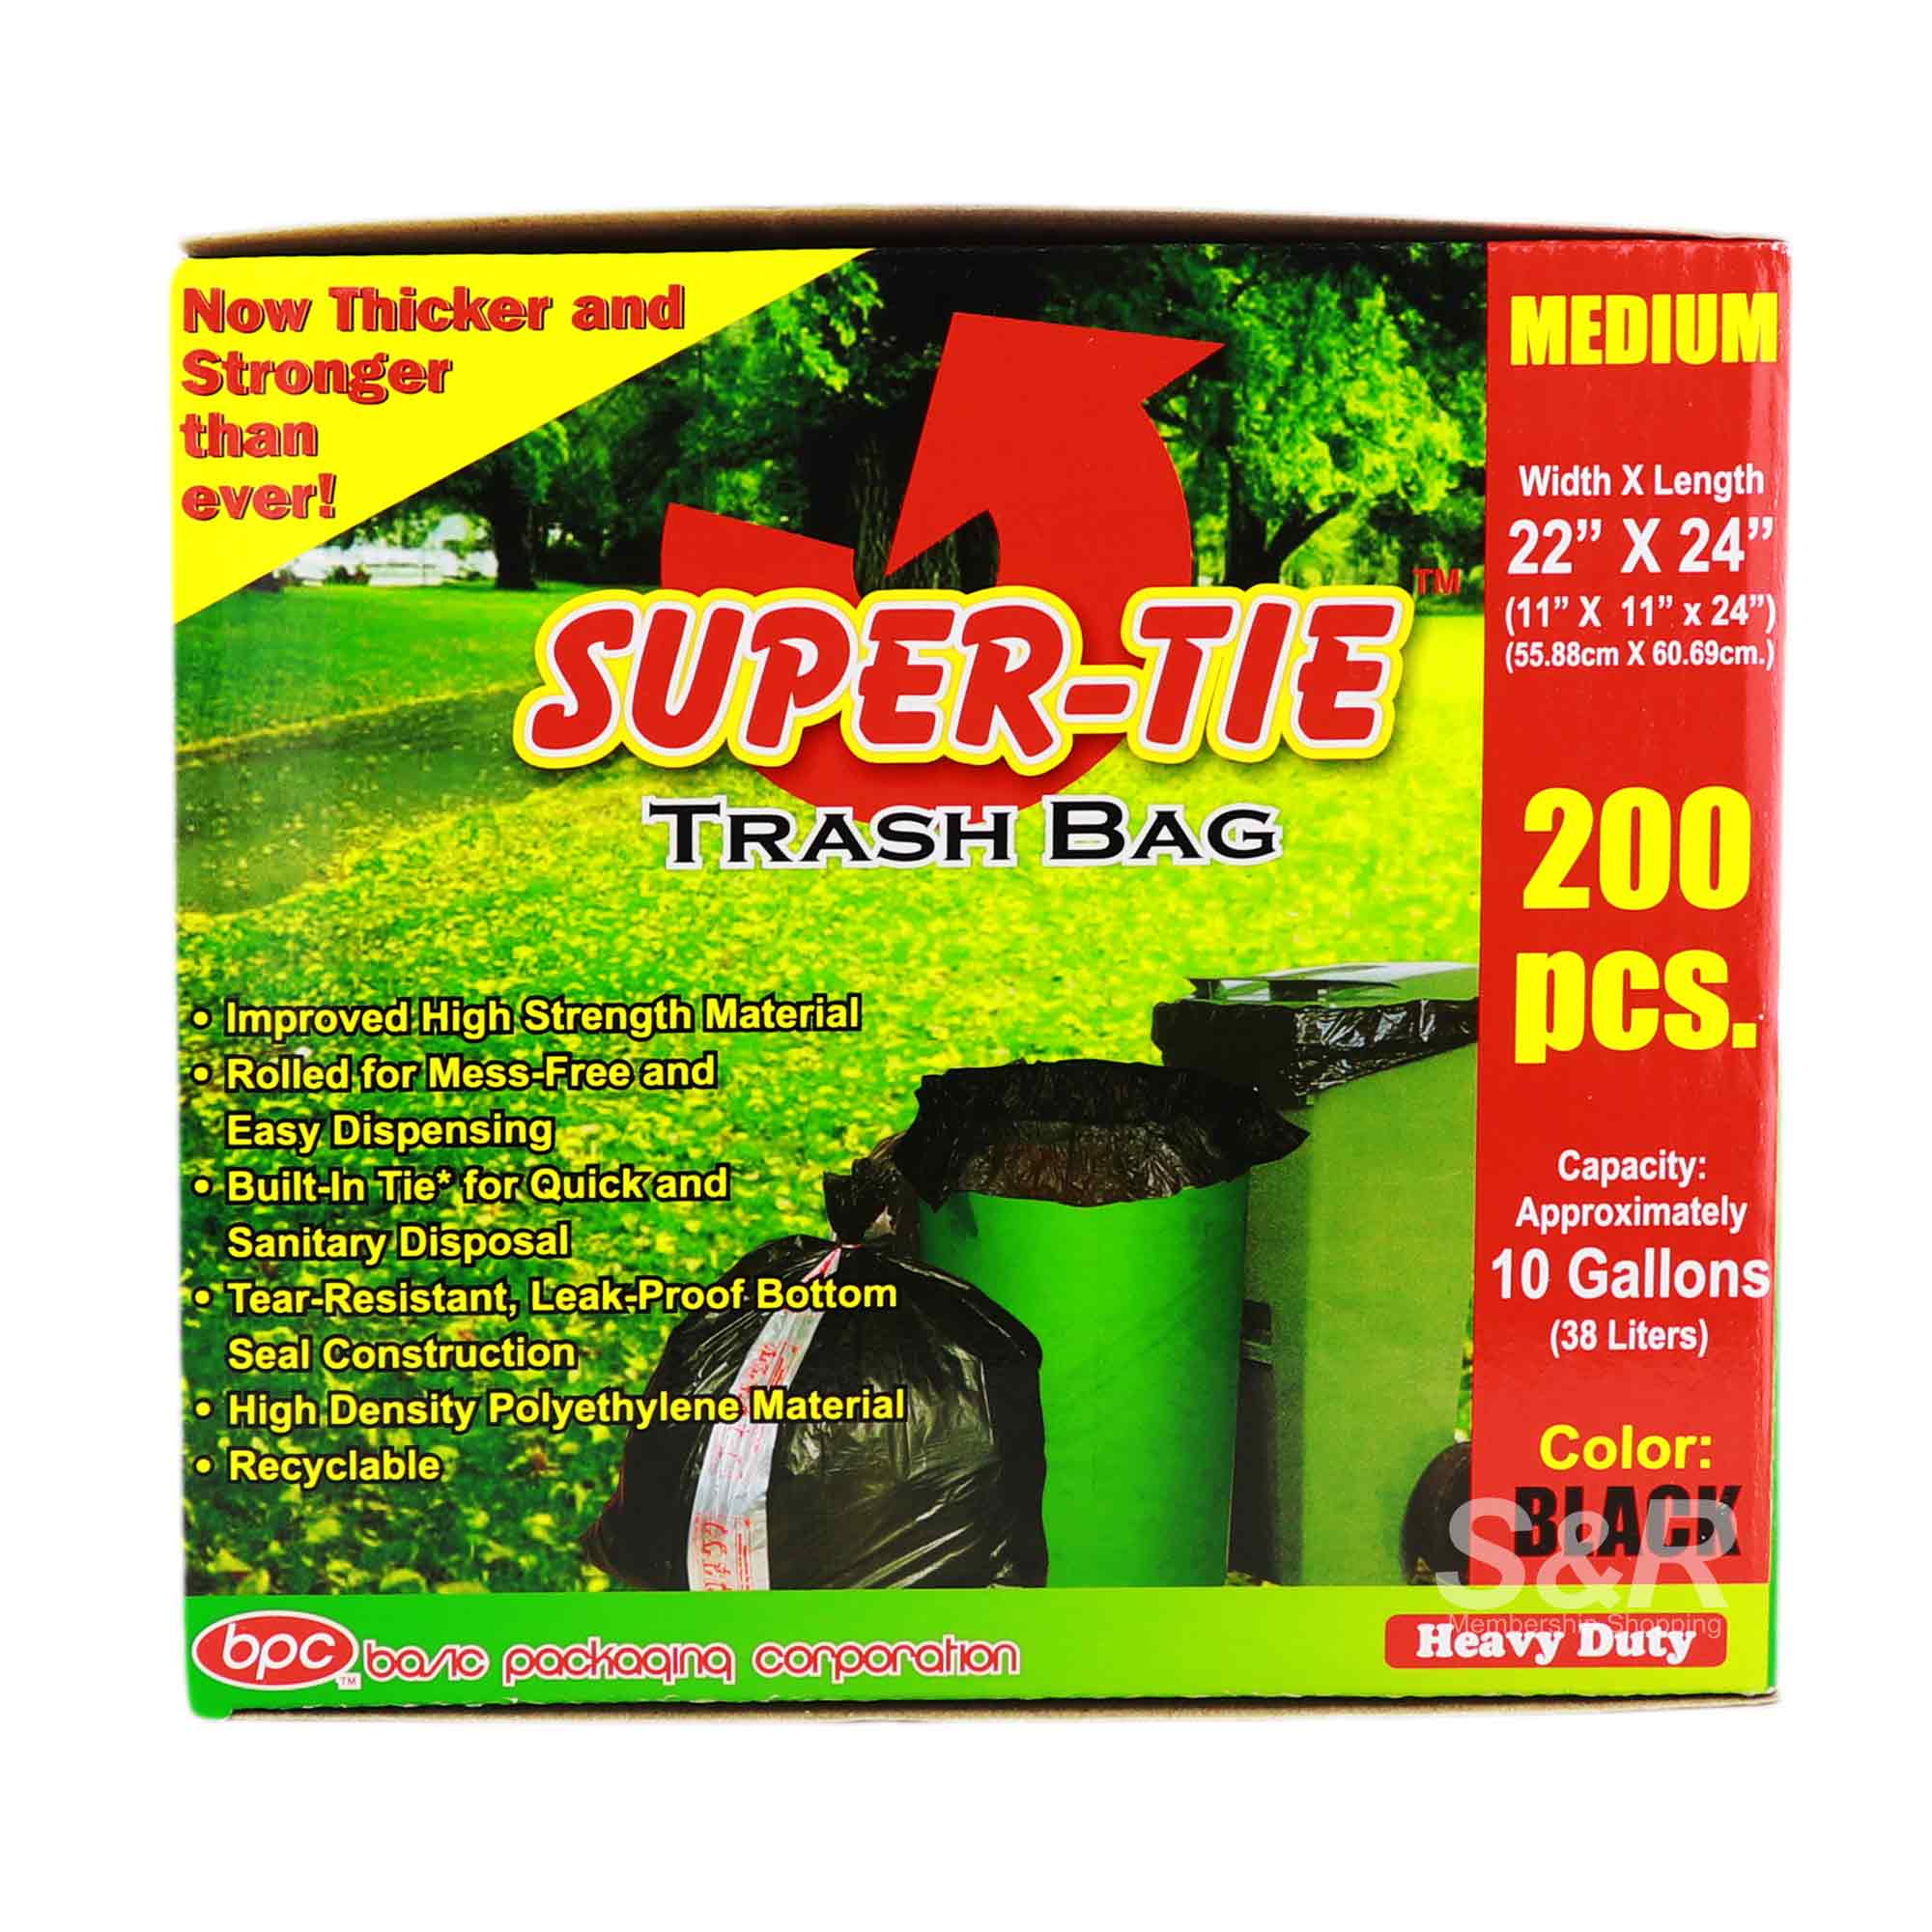 Super-Tie Trash Bag Medium Size 200pcs